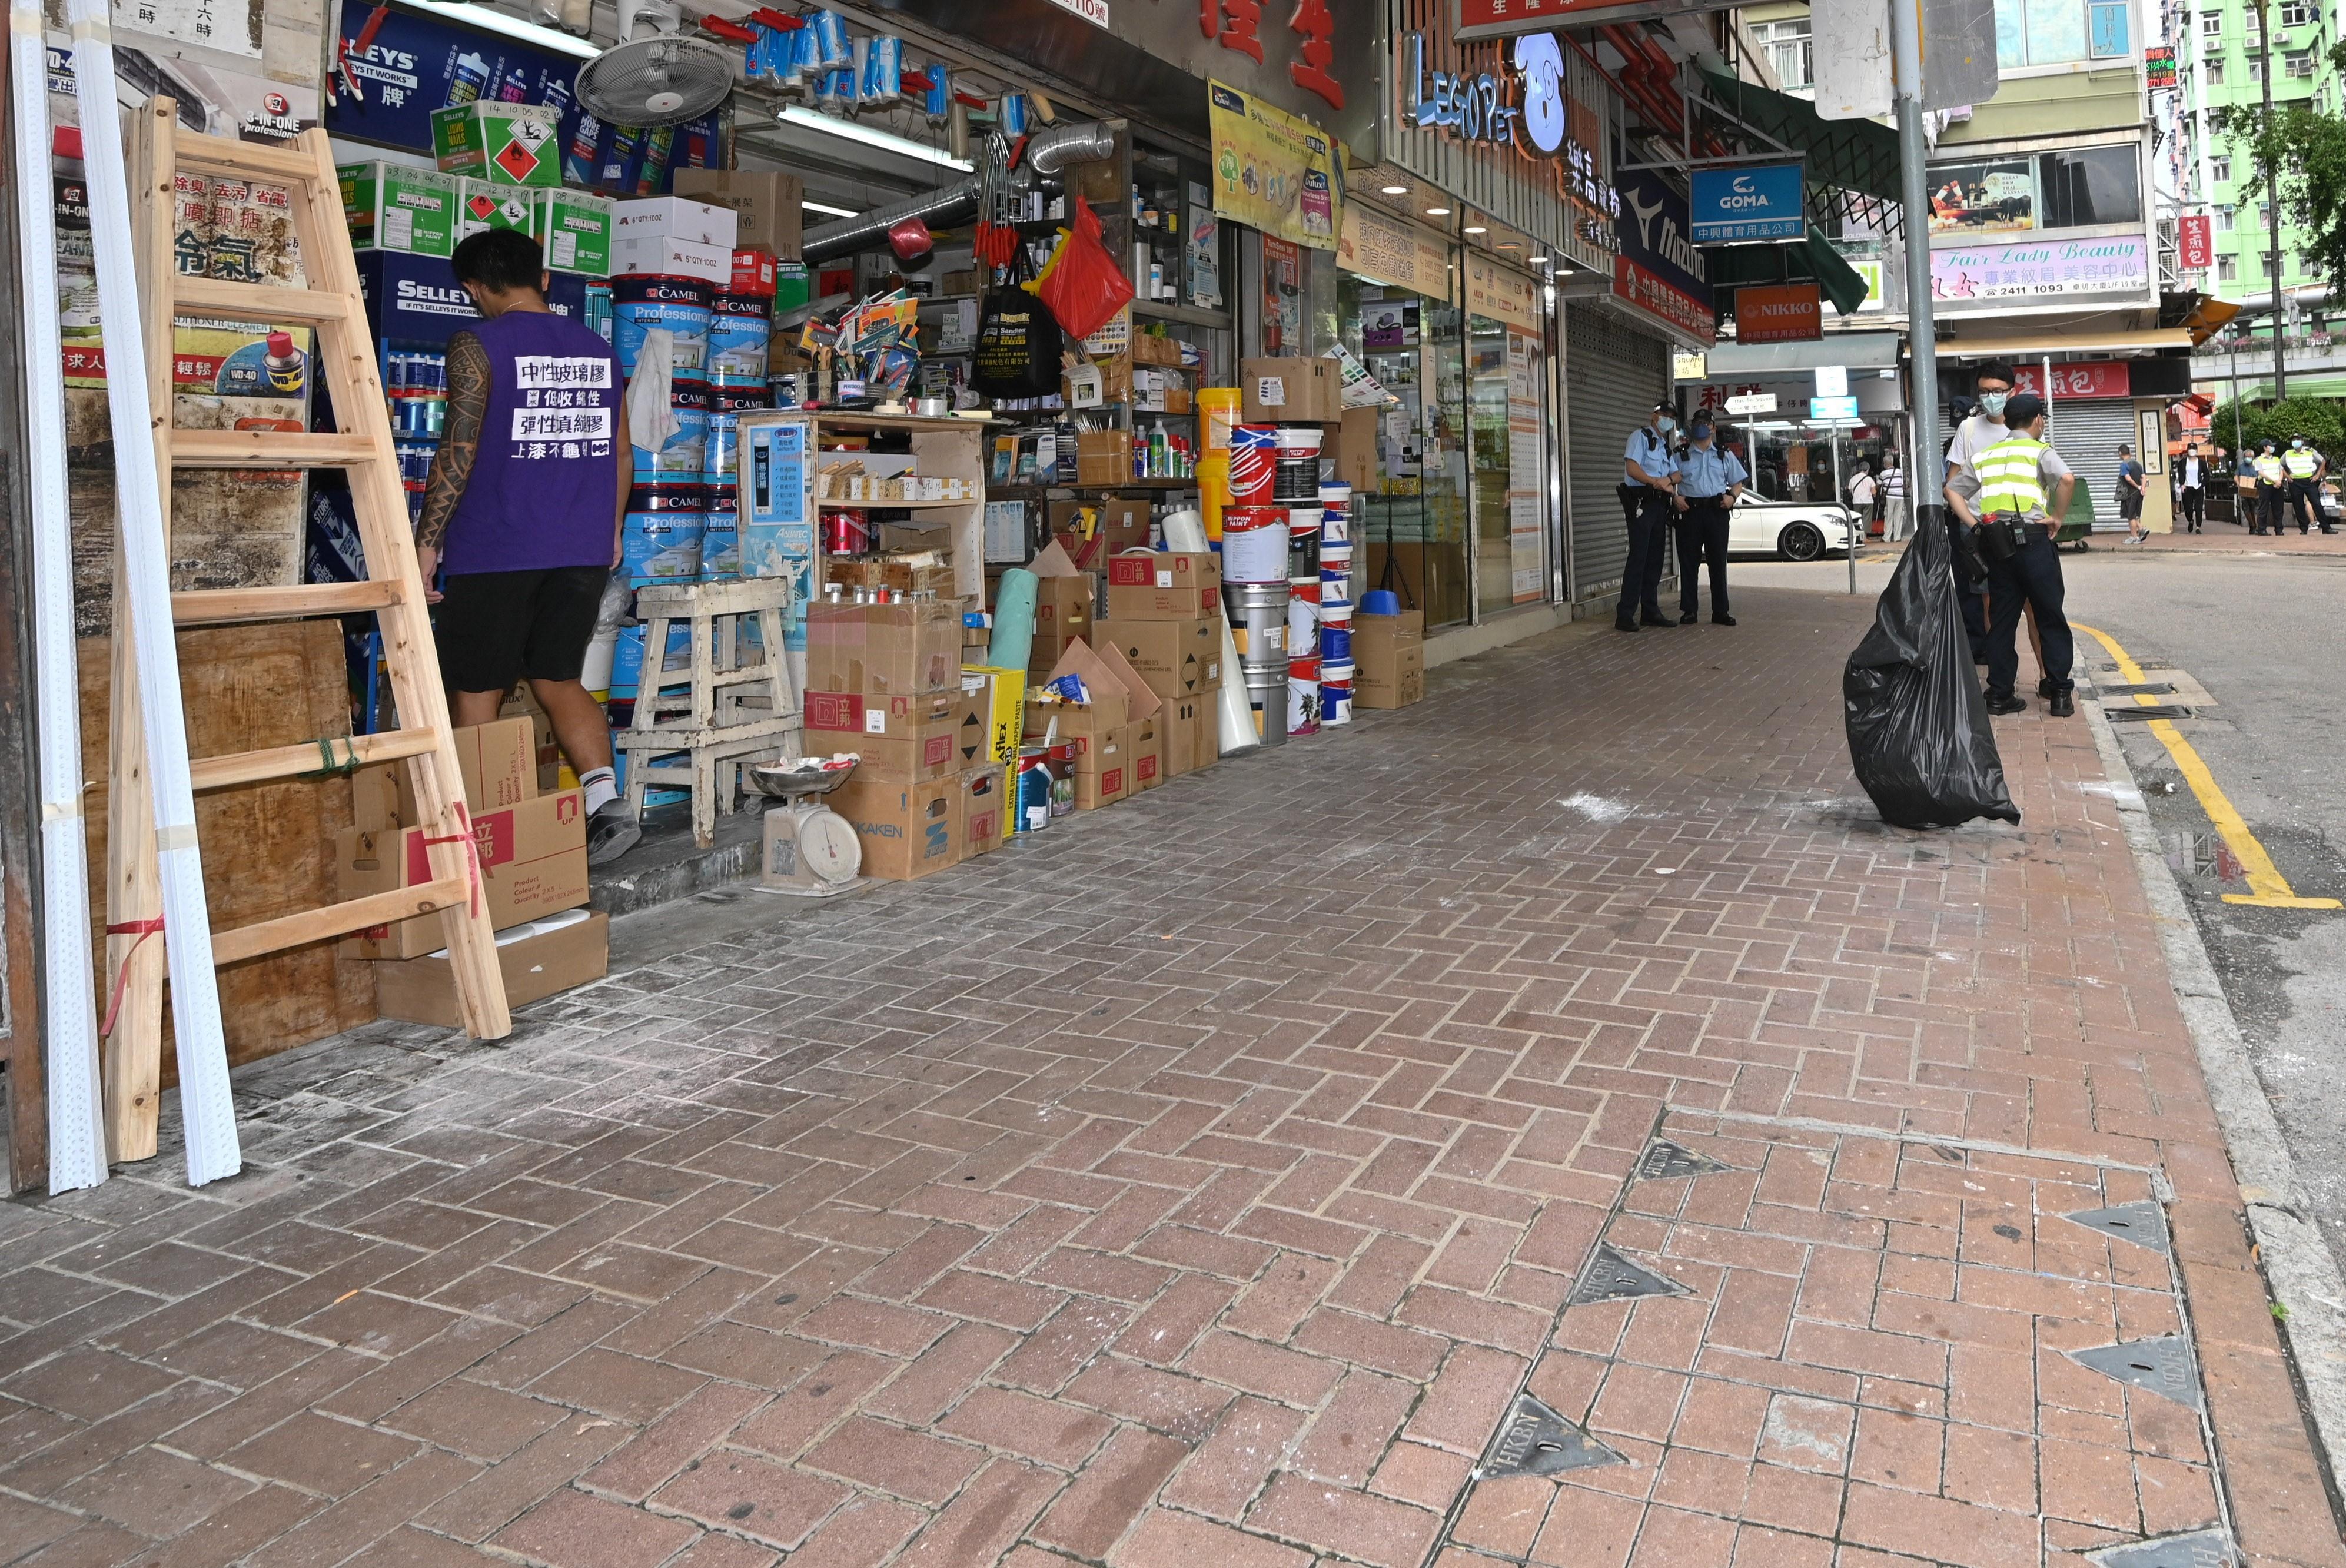 食物環境衞生署與香港警務處自十月三日起先後於各區展開連串嚴厲執法行動打擊非法店鋪阻街活動。圖示荃灣一條街道於昨日（十月七日）聯合行動後的情況。